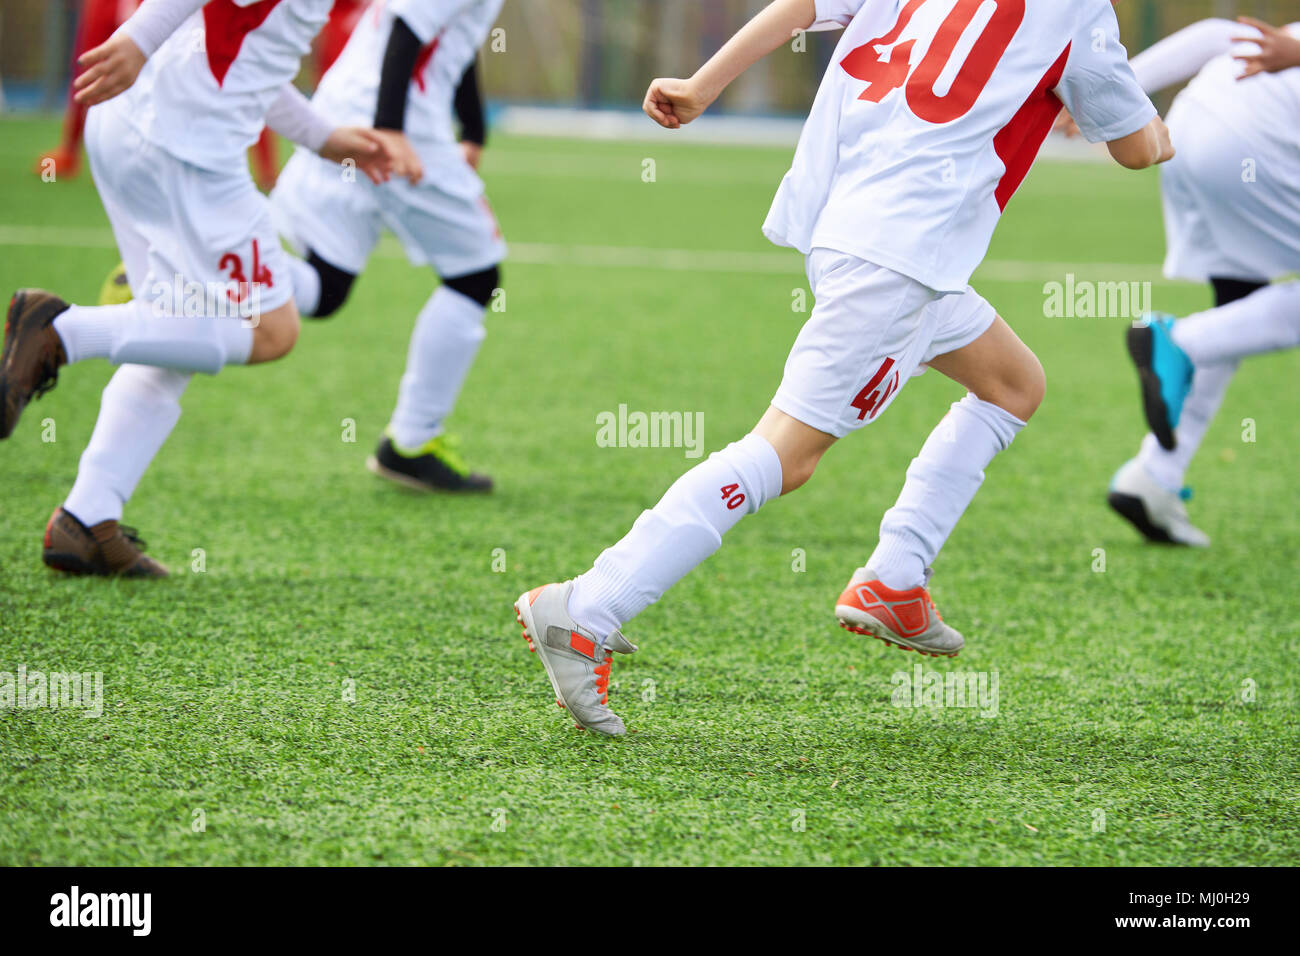 Kinder Fußball Spieler Training auf dem Fußballplatz Stockfoto